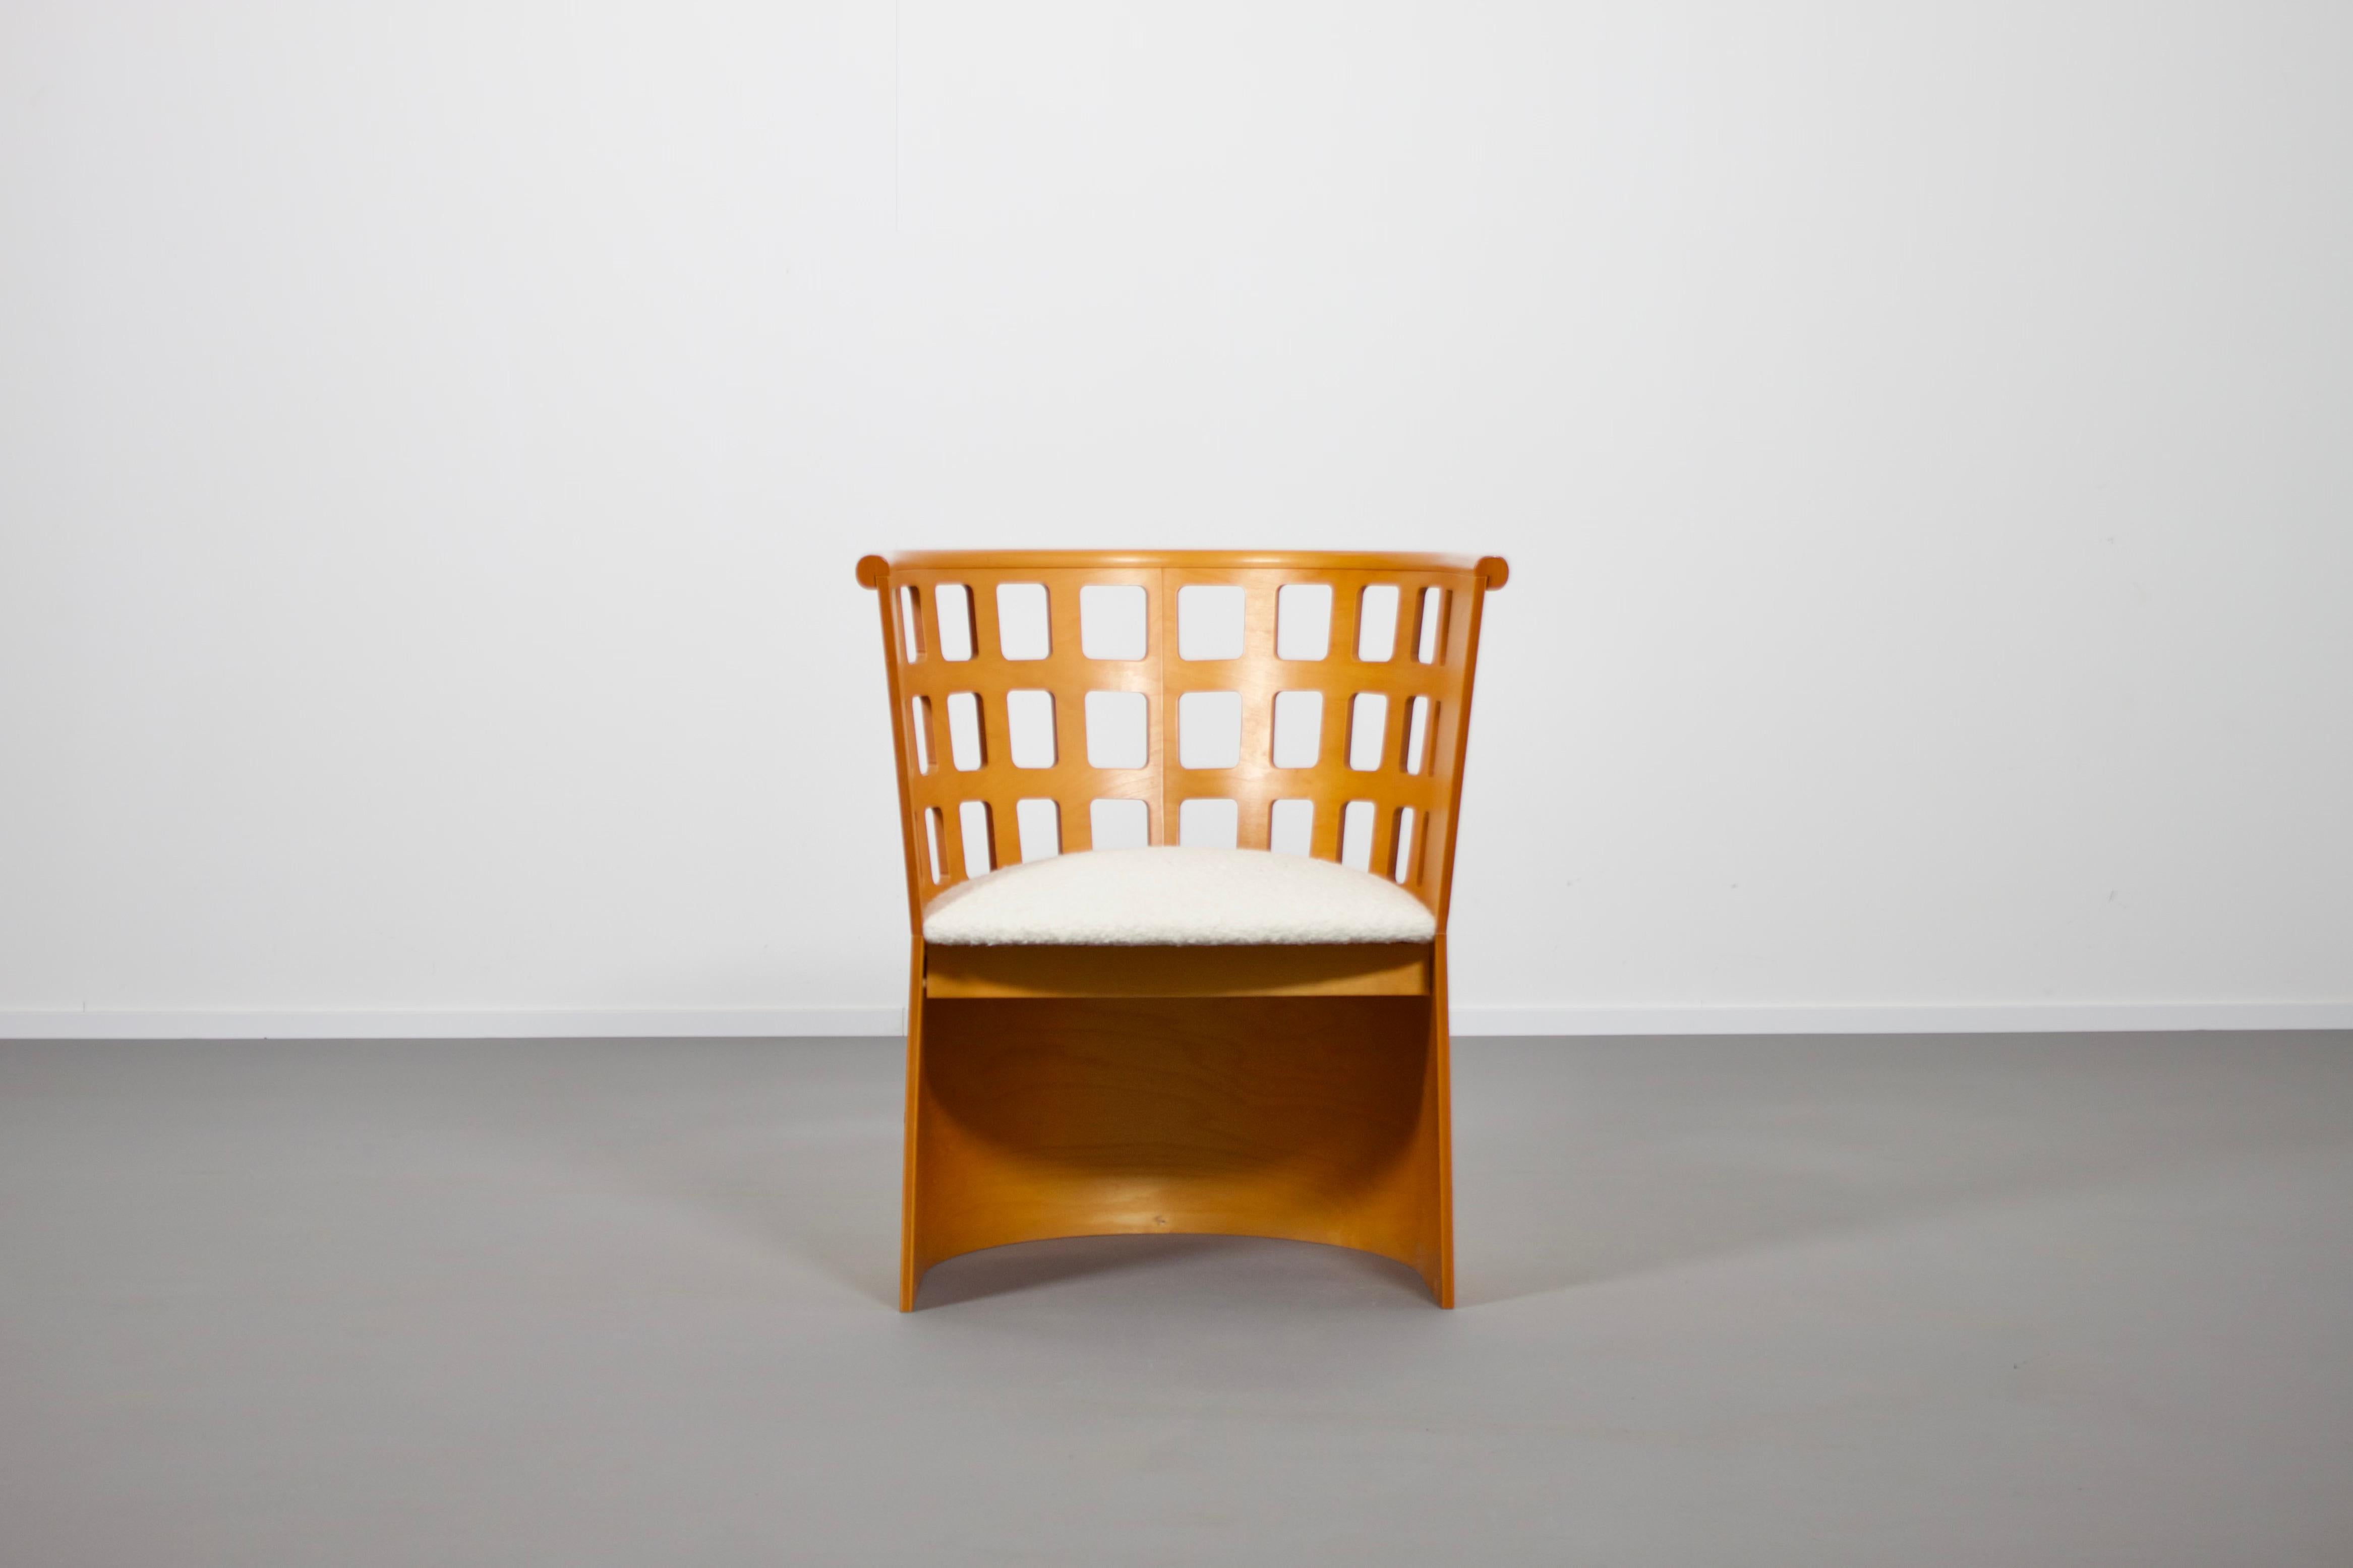 Schöner Birke Sessel in sehr gutem Zustand.

Entworfen von Eero Aarnio und hergestellt von Asko, Finnland.

Der Stuhl ist aus gebogenem Sperrholz gefertigt, das mit einem schönen Birkenfurnier laminiert ist.

Die Rückenlehne des Stuhls hat ein